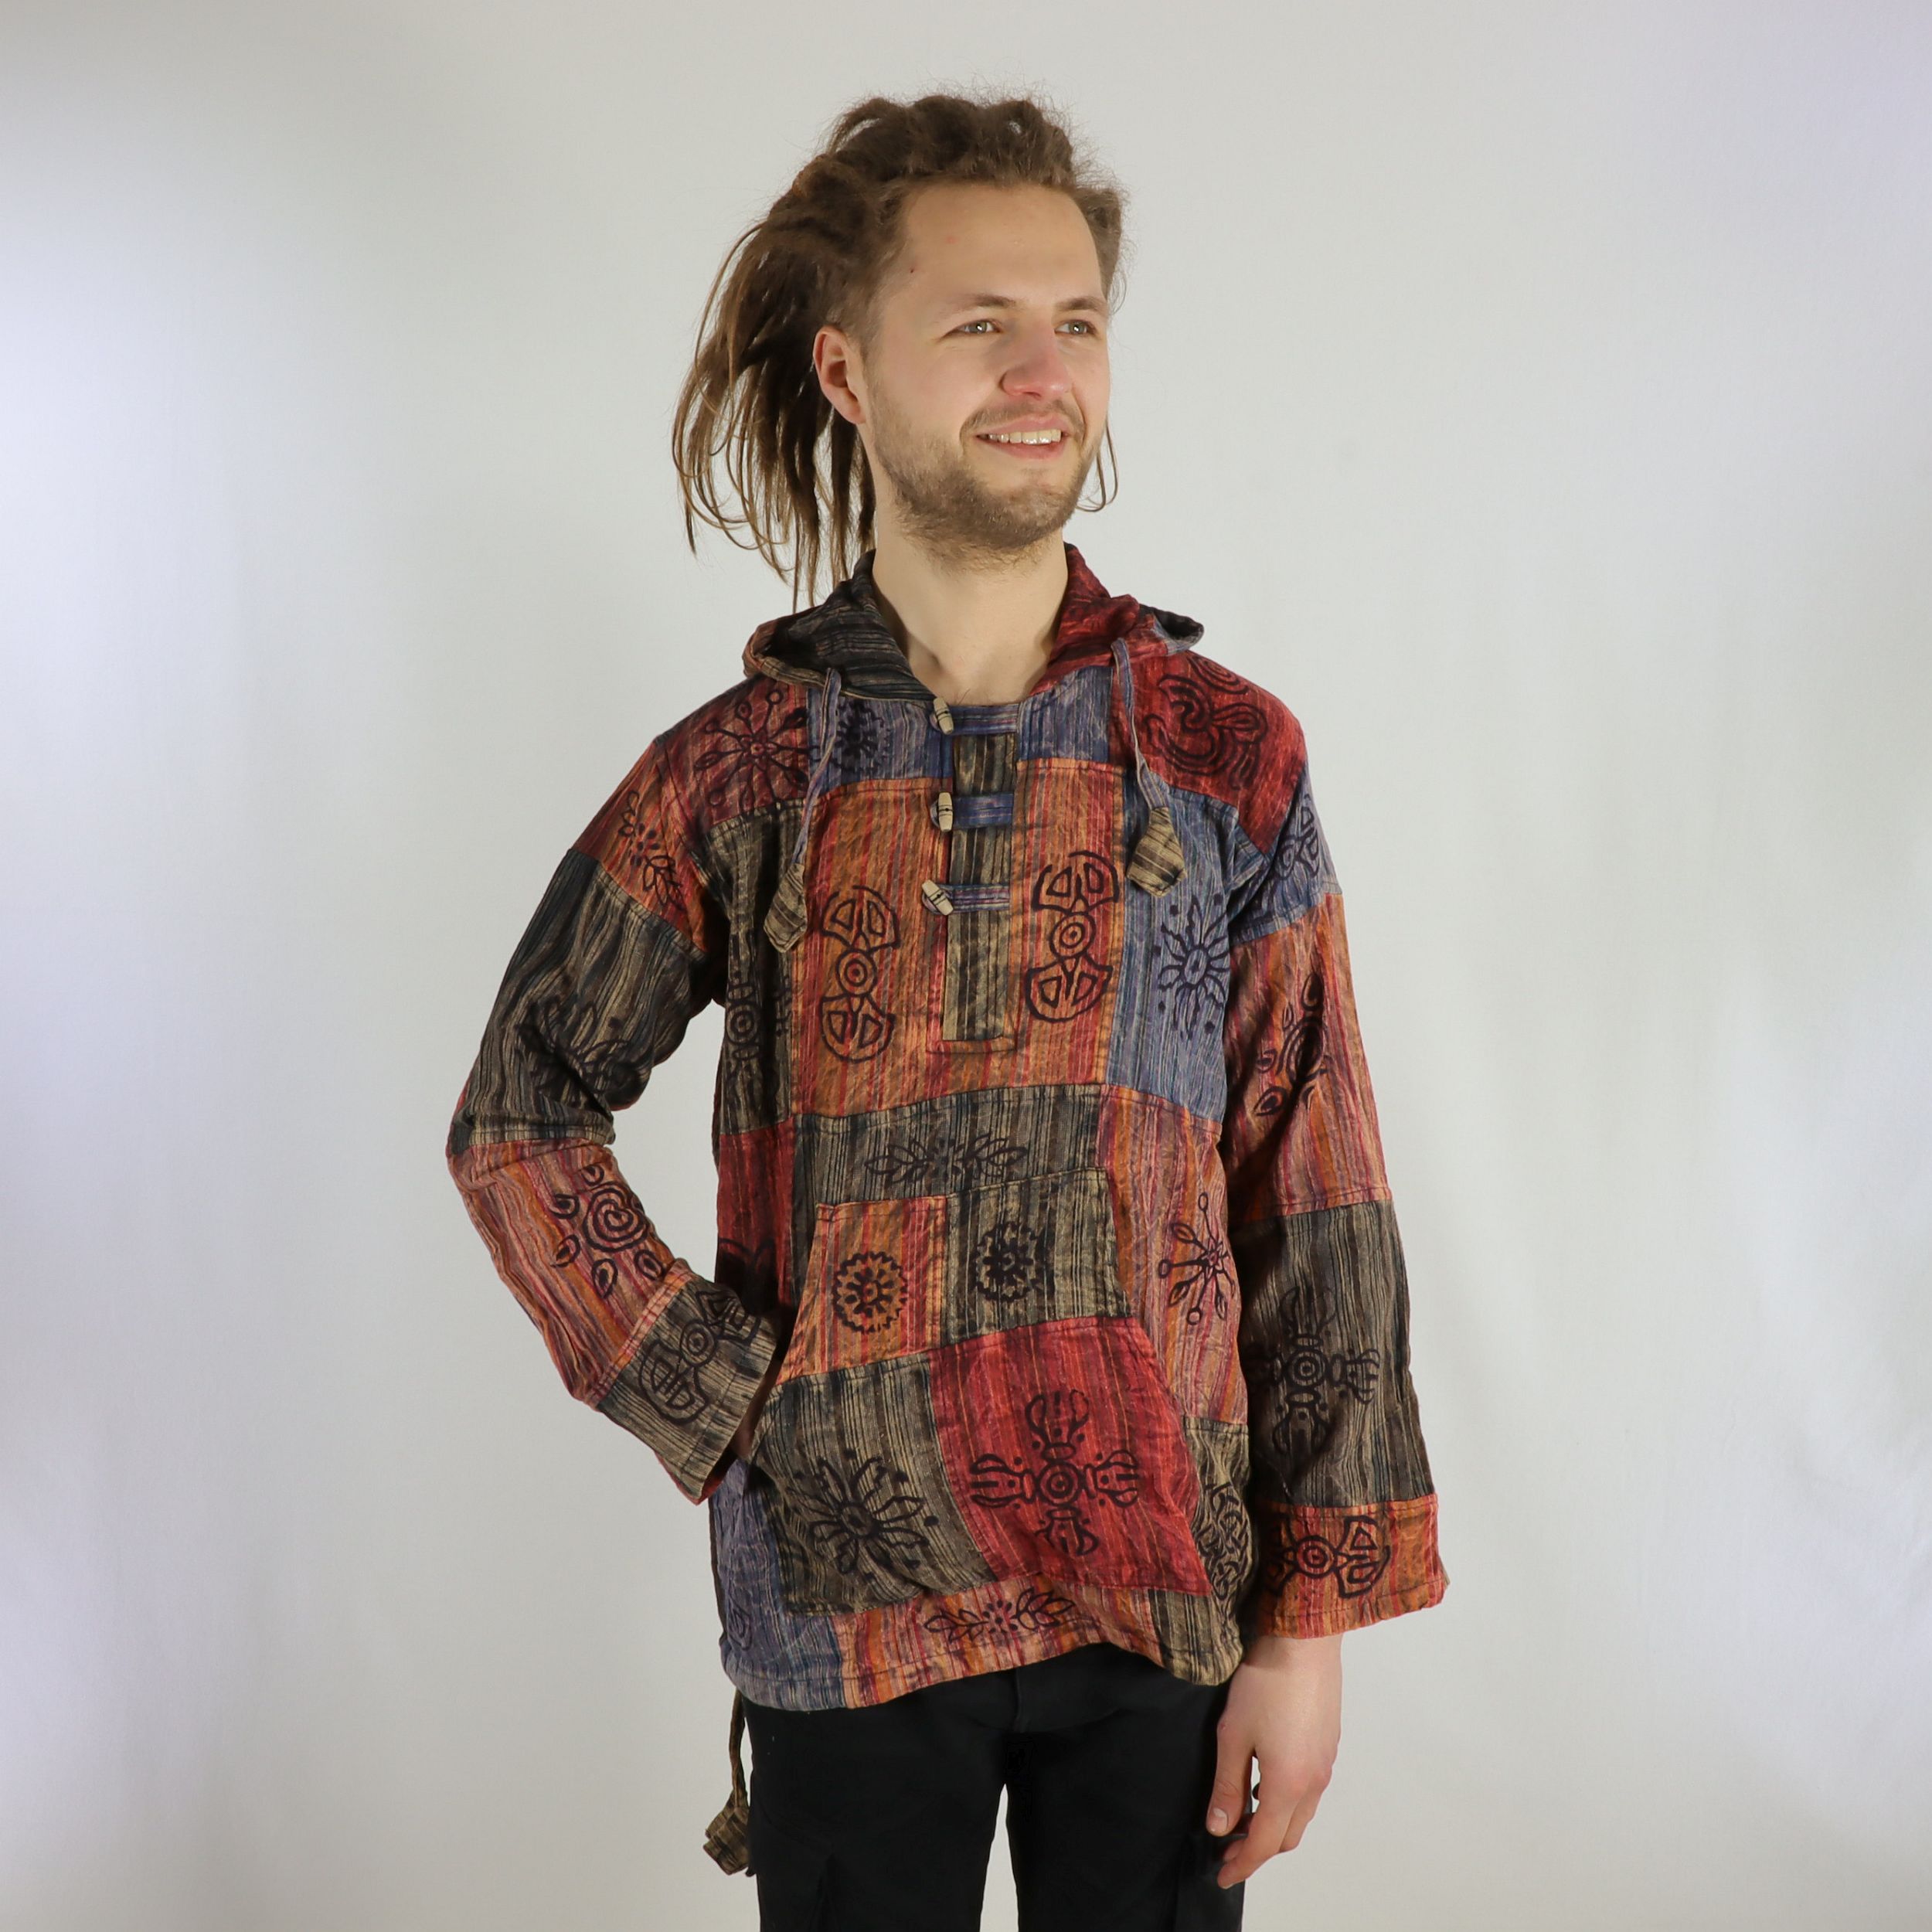 Kangaroo-Hemd - Patchwork Design - 100% Baumwolle - große Tasche und Kaputze - Dein außergewöhnliches Used Look Hemd - Fair gehandelt aus Nepal